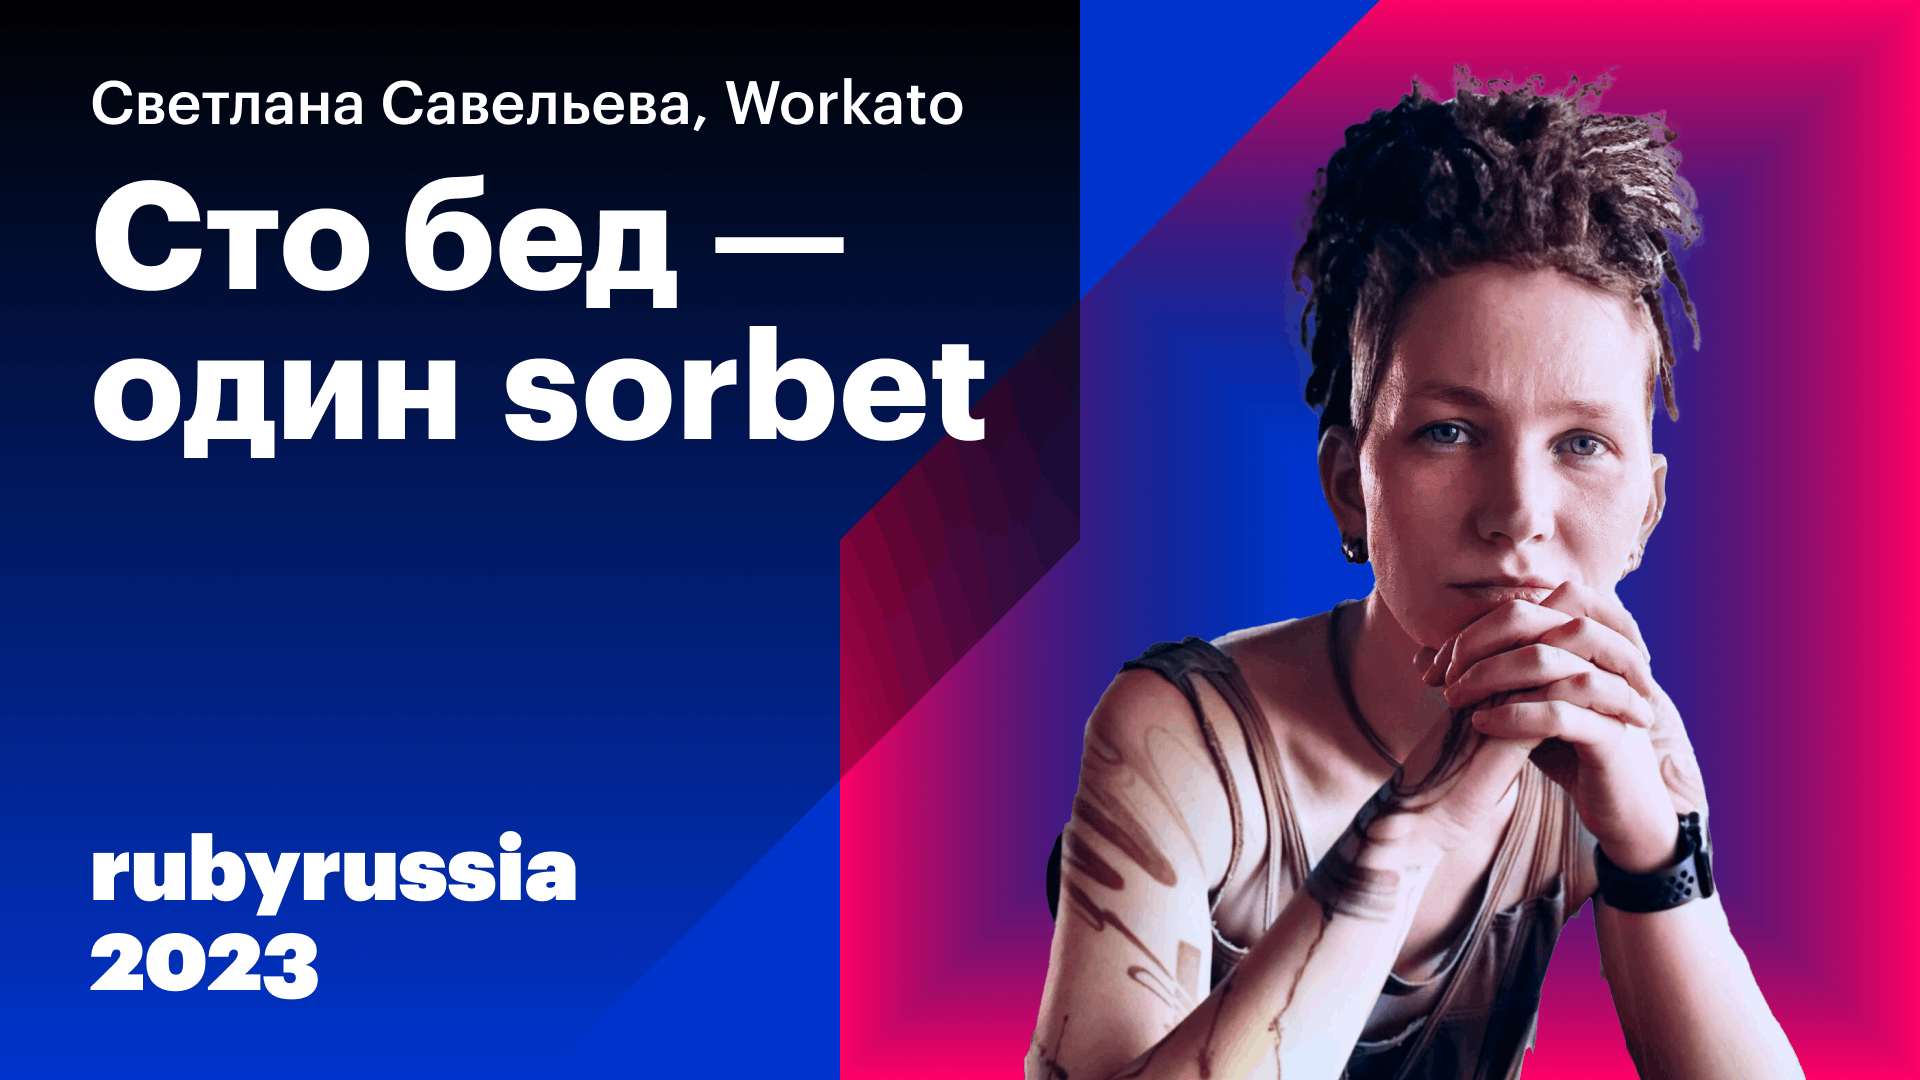 100 бед - один sorbet — Светлана Савельева, Workato. Ruby Russia 2023